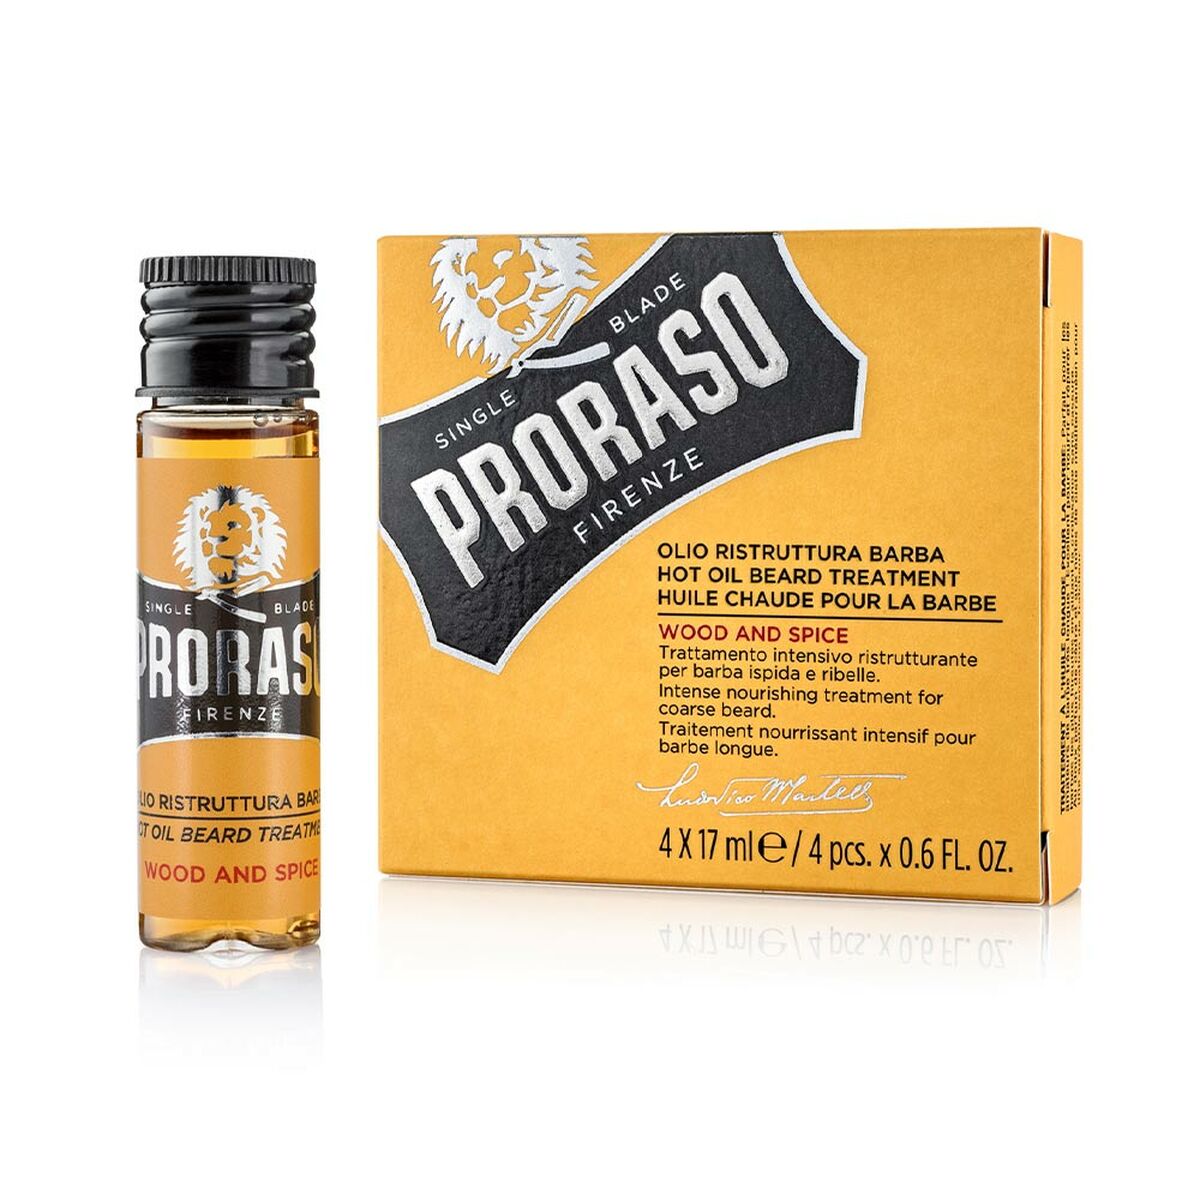 Beard Oil Yellow Proraso Hot (4 x 17 ml)-0